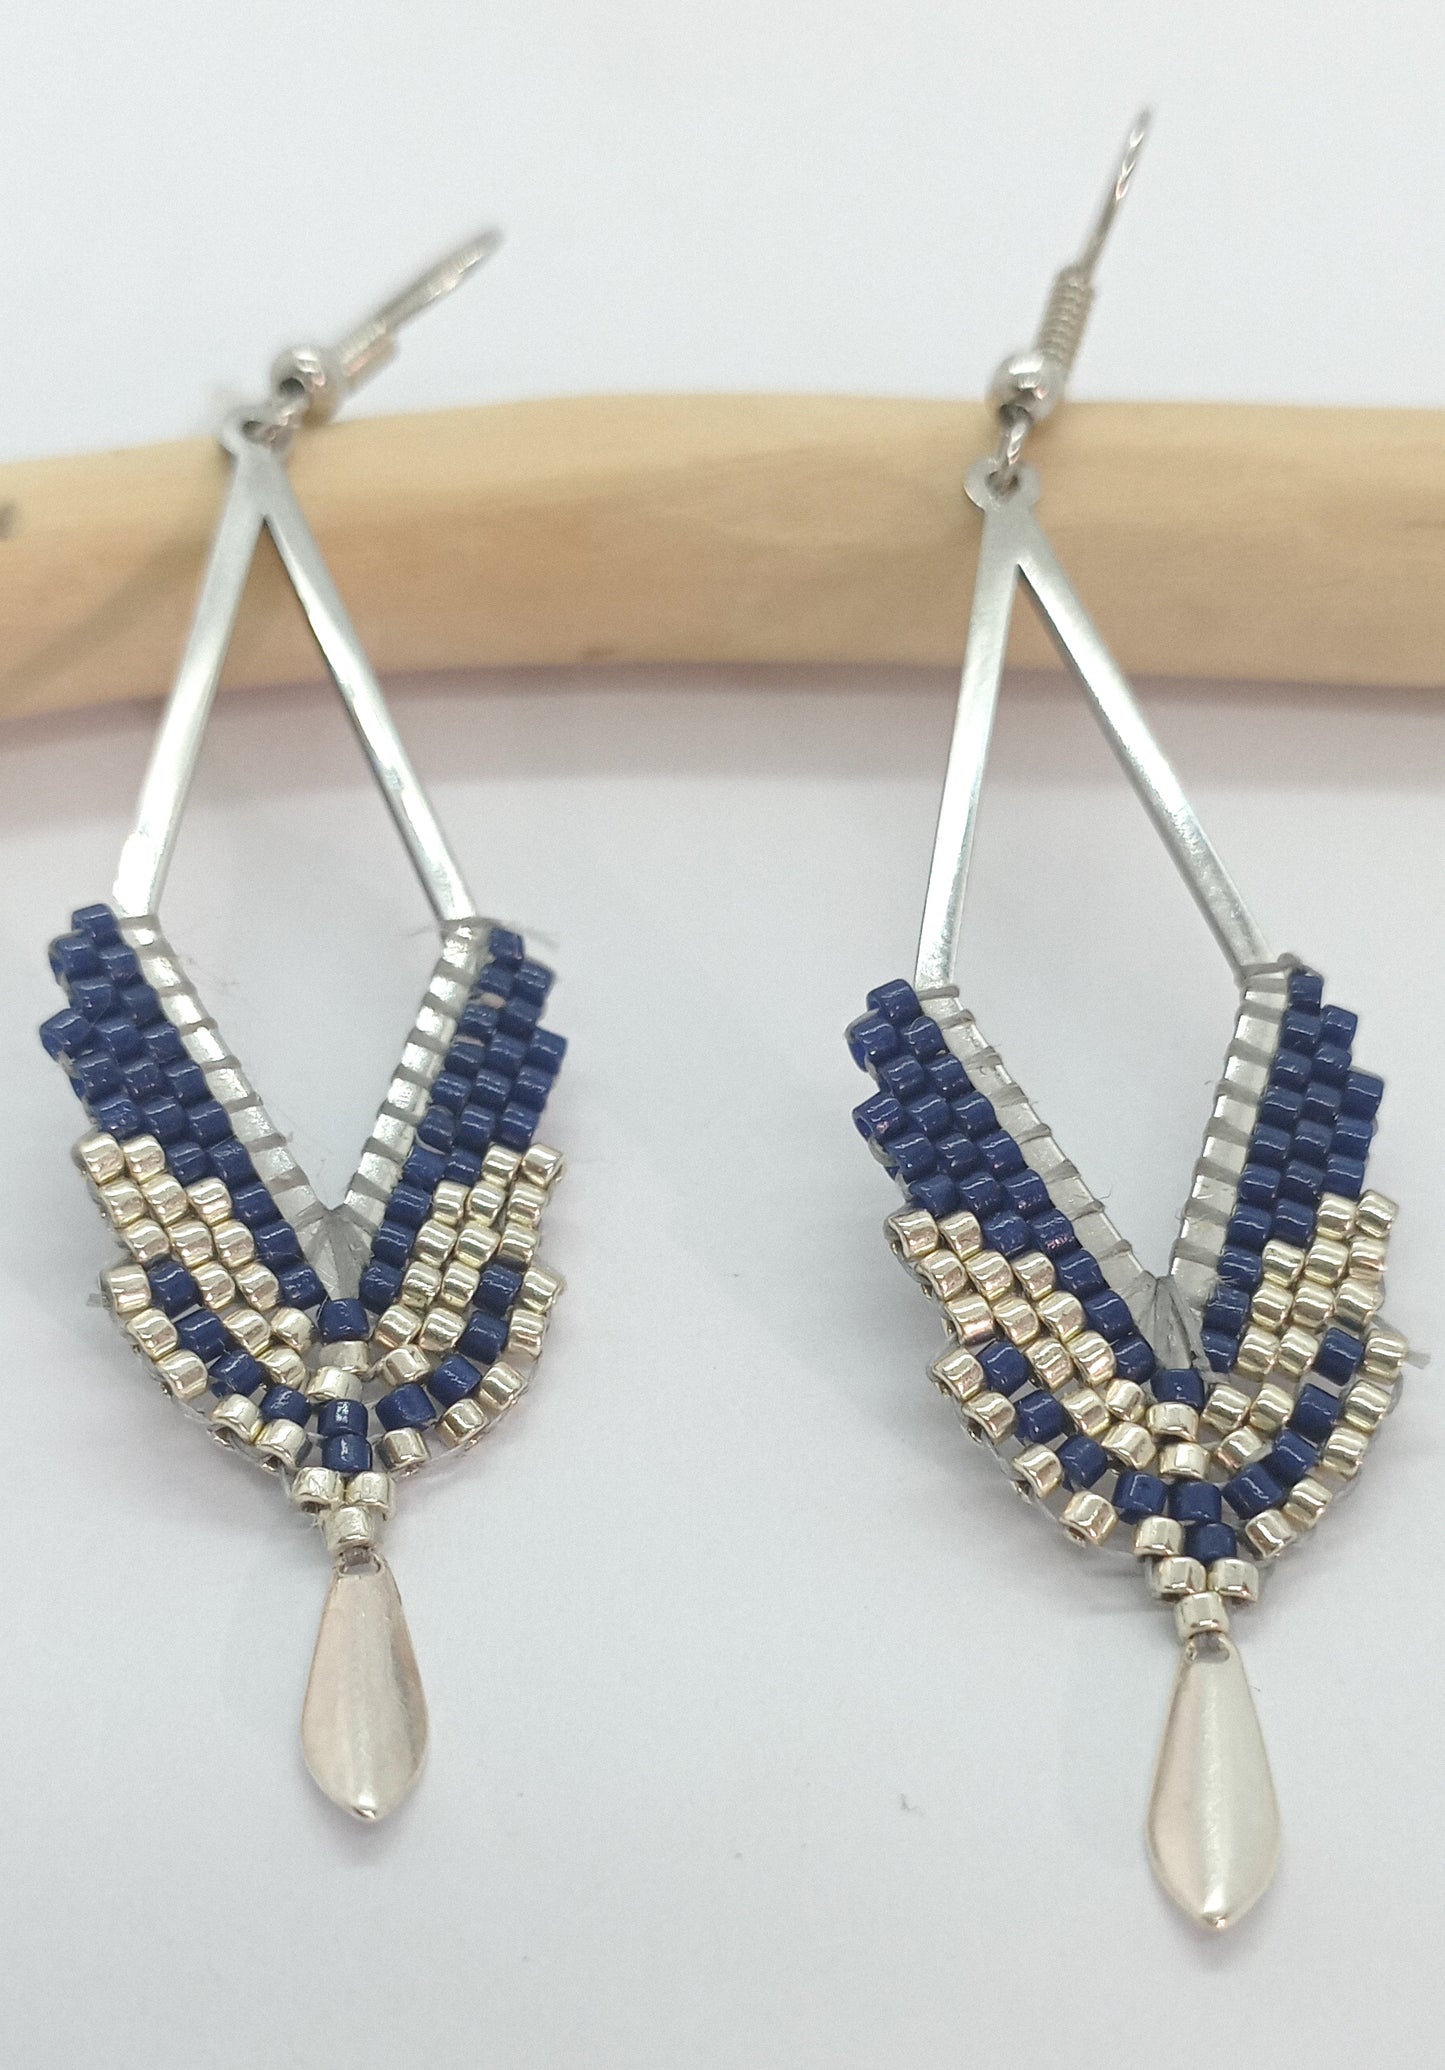 Boucles d'oreilles en forme de losange ajouré et en perles miyuki tissées bleu marine sur un fond blanc et bois clair